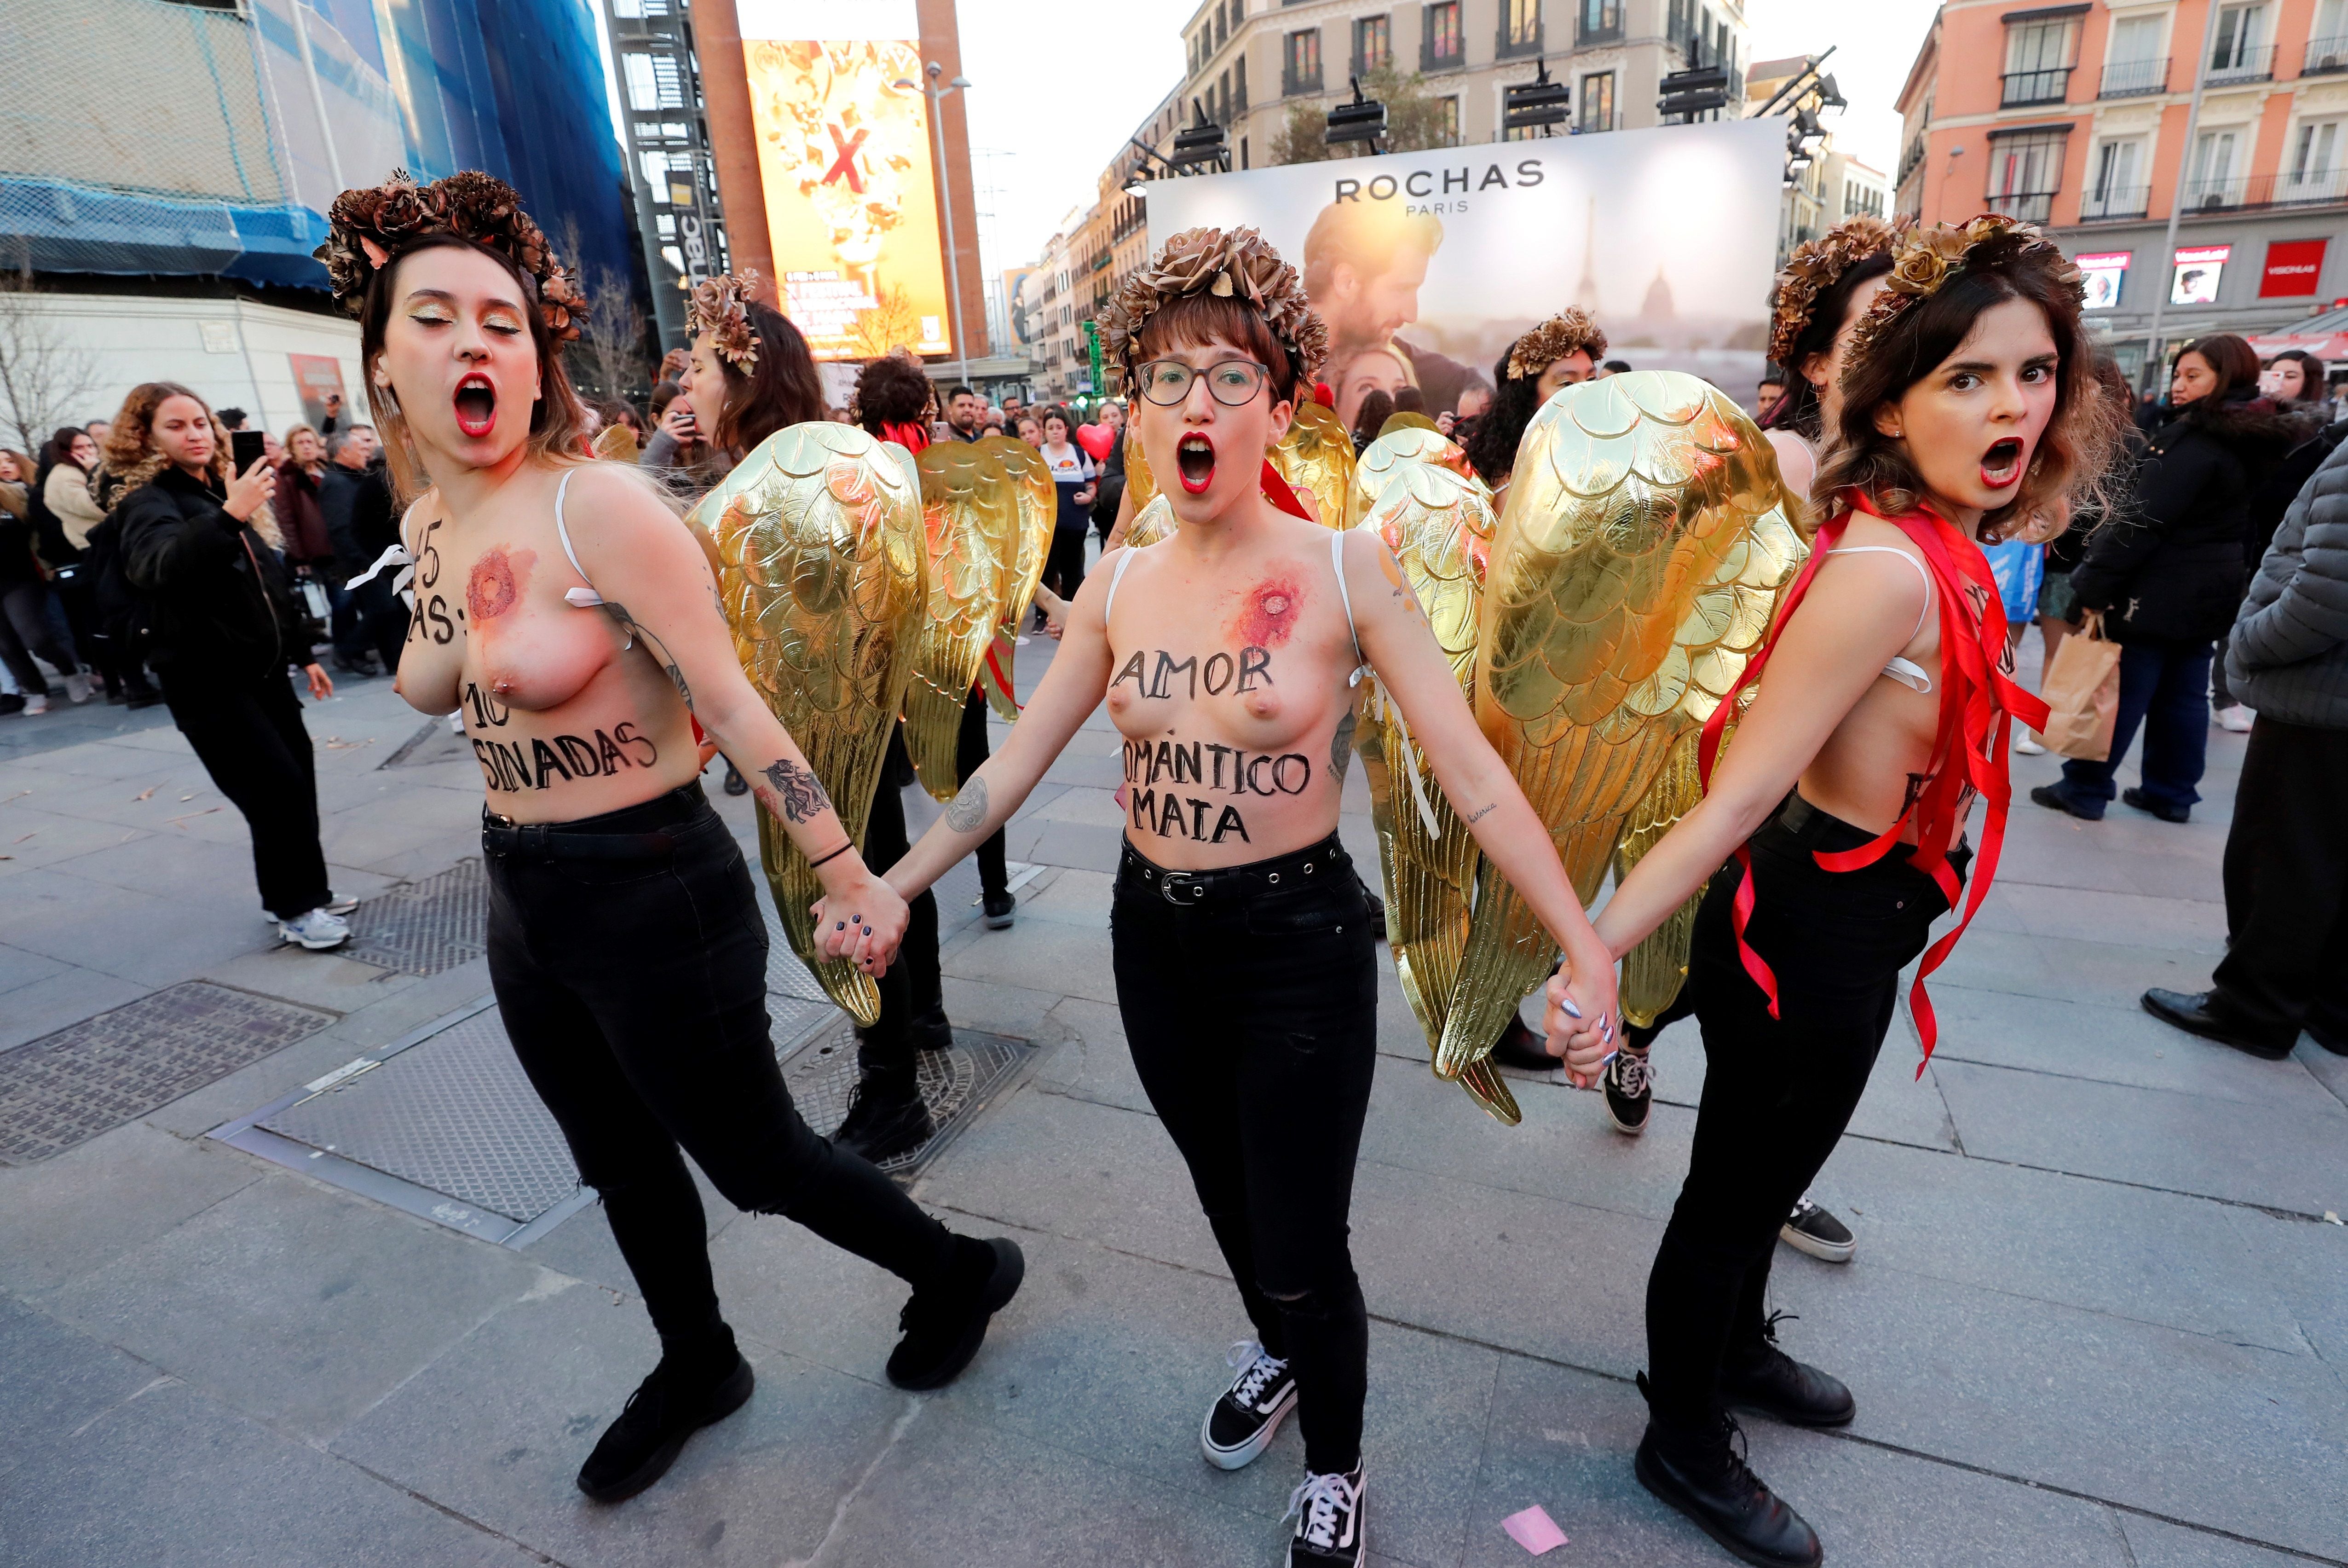 Activistas de Femen protestan desnudas contra el “amor romántico” y los  feminicidios